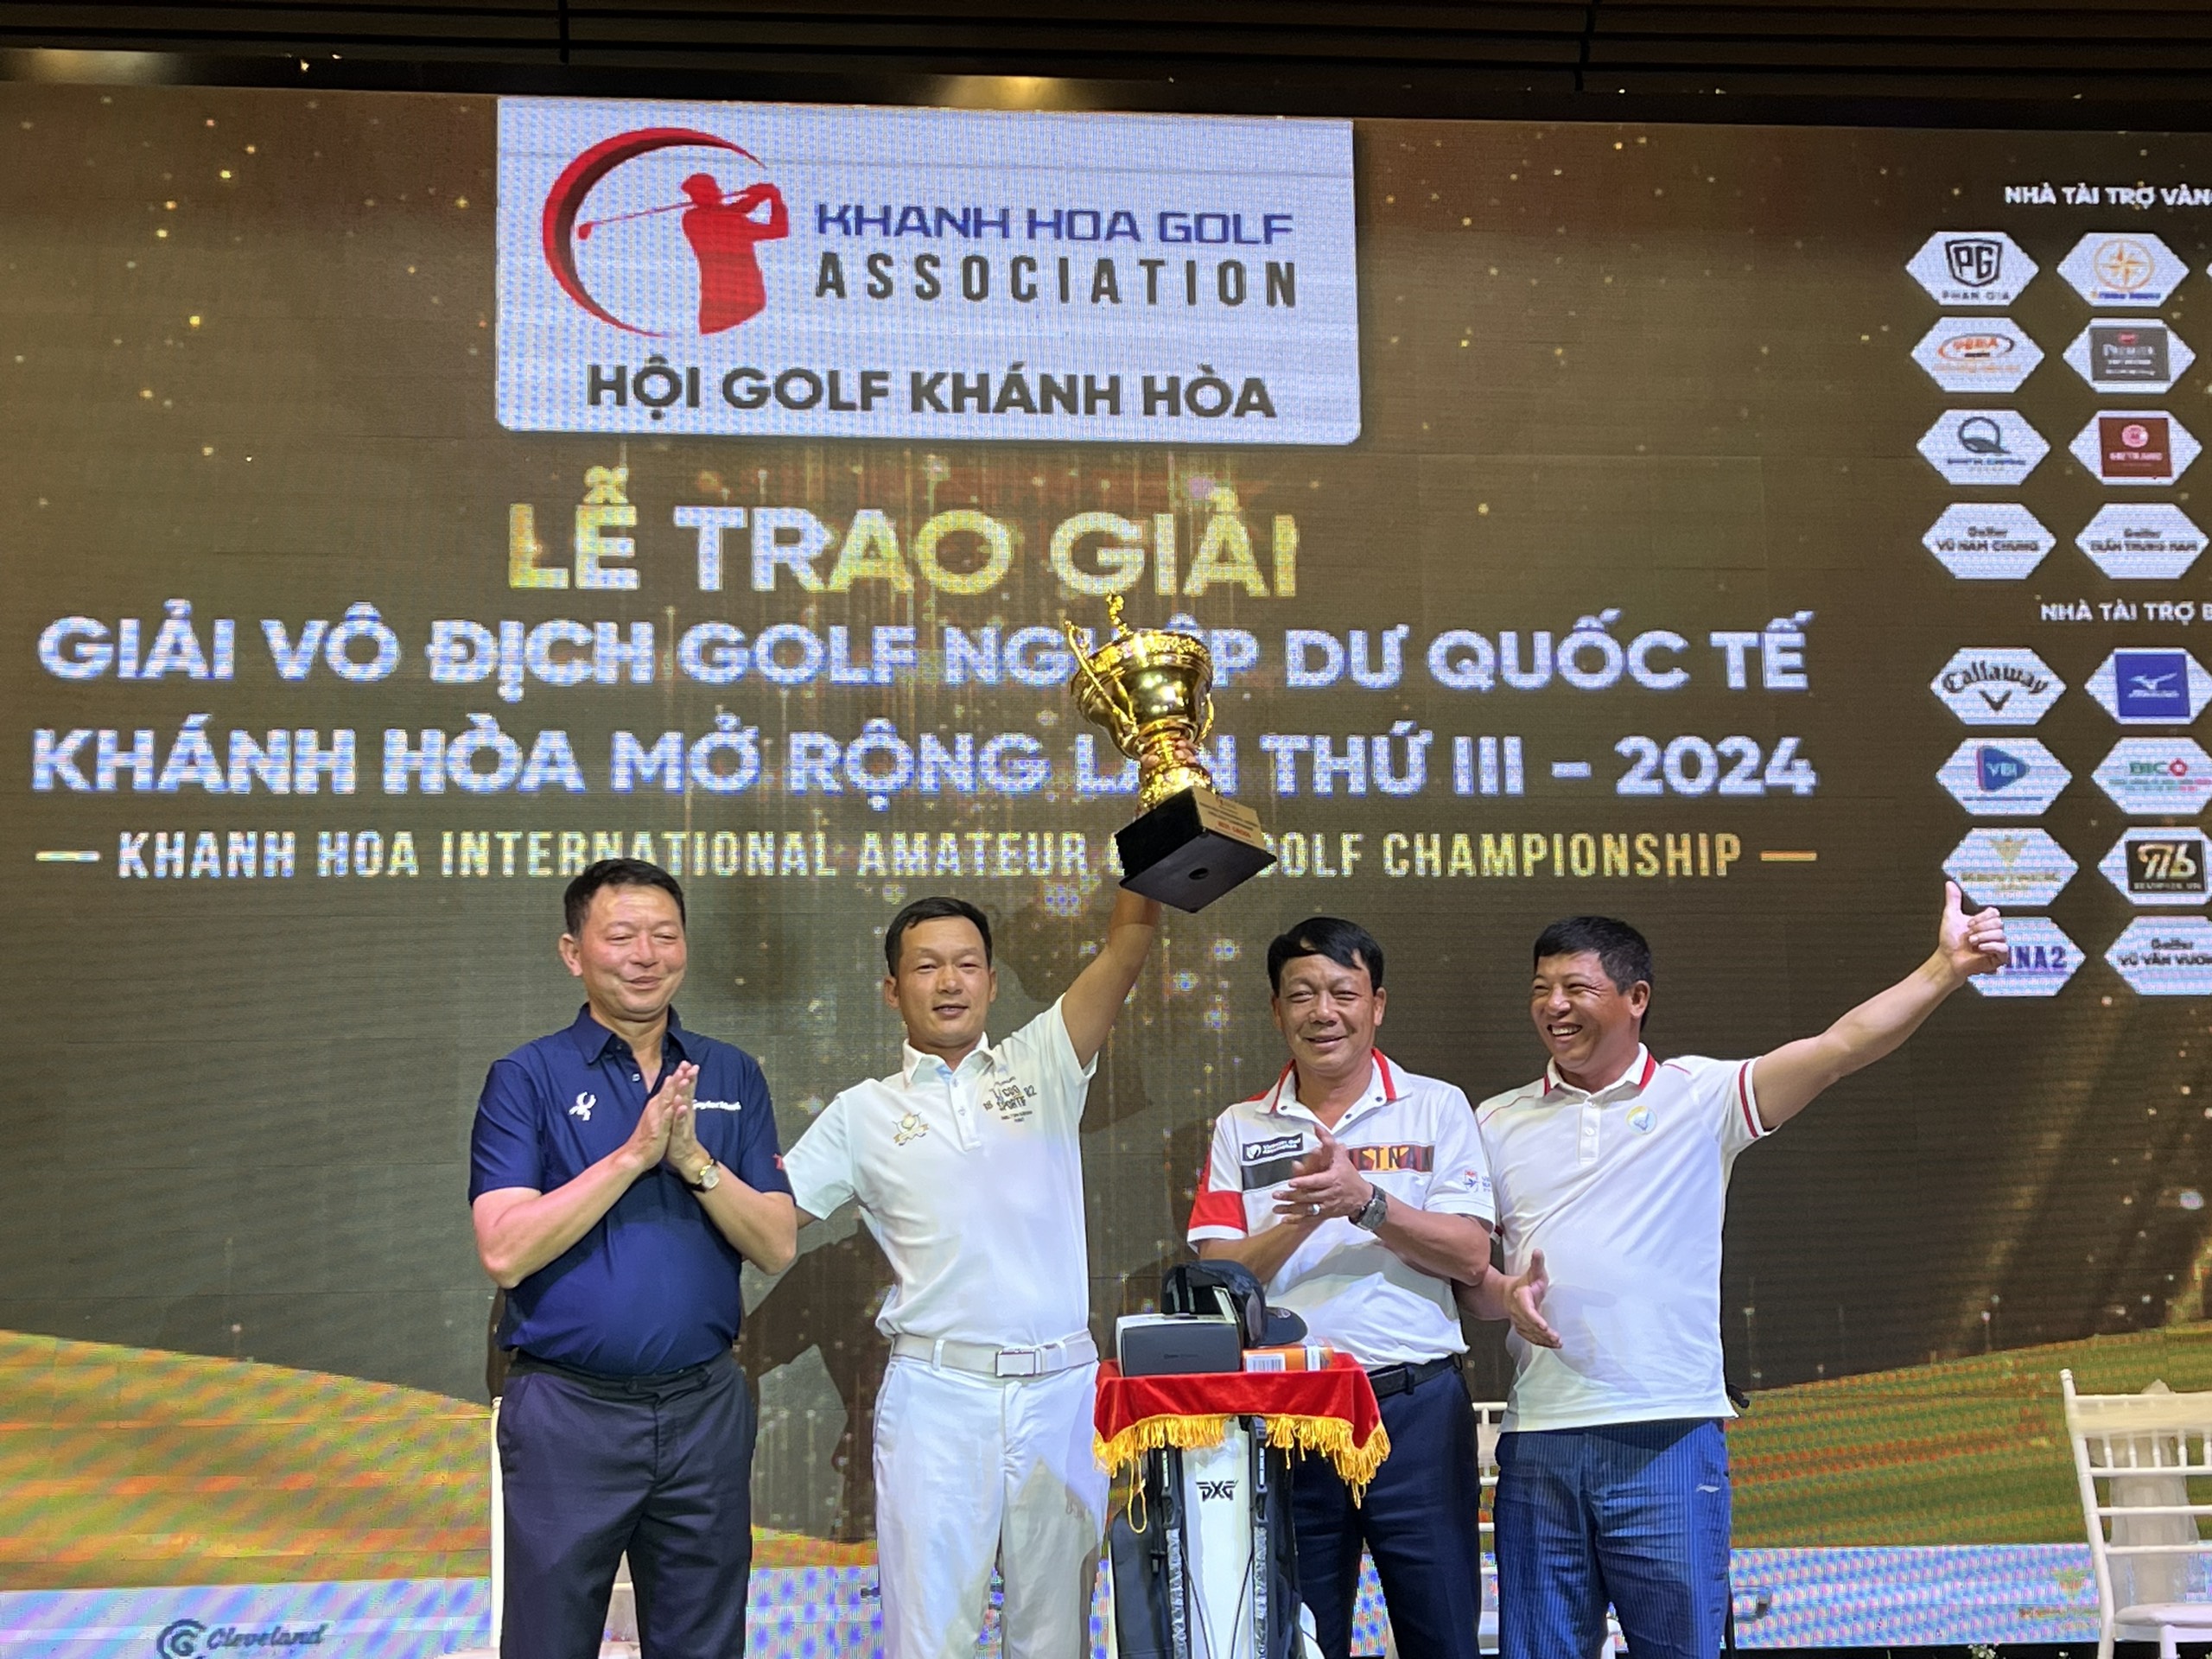 Đánh bại hơn 200 golfer, Âu Văn Sơn vô địch giải golf Khánh Hòa - 1